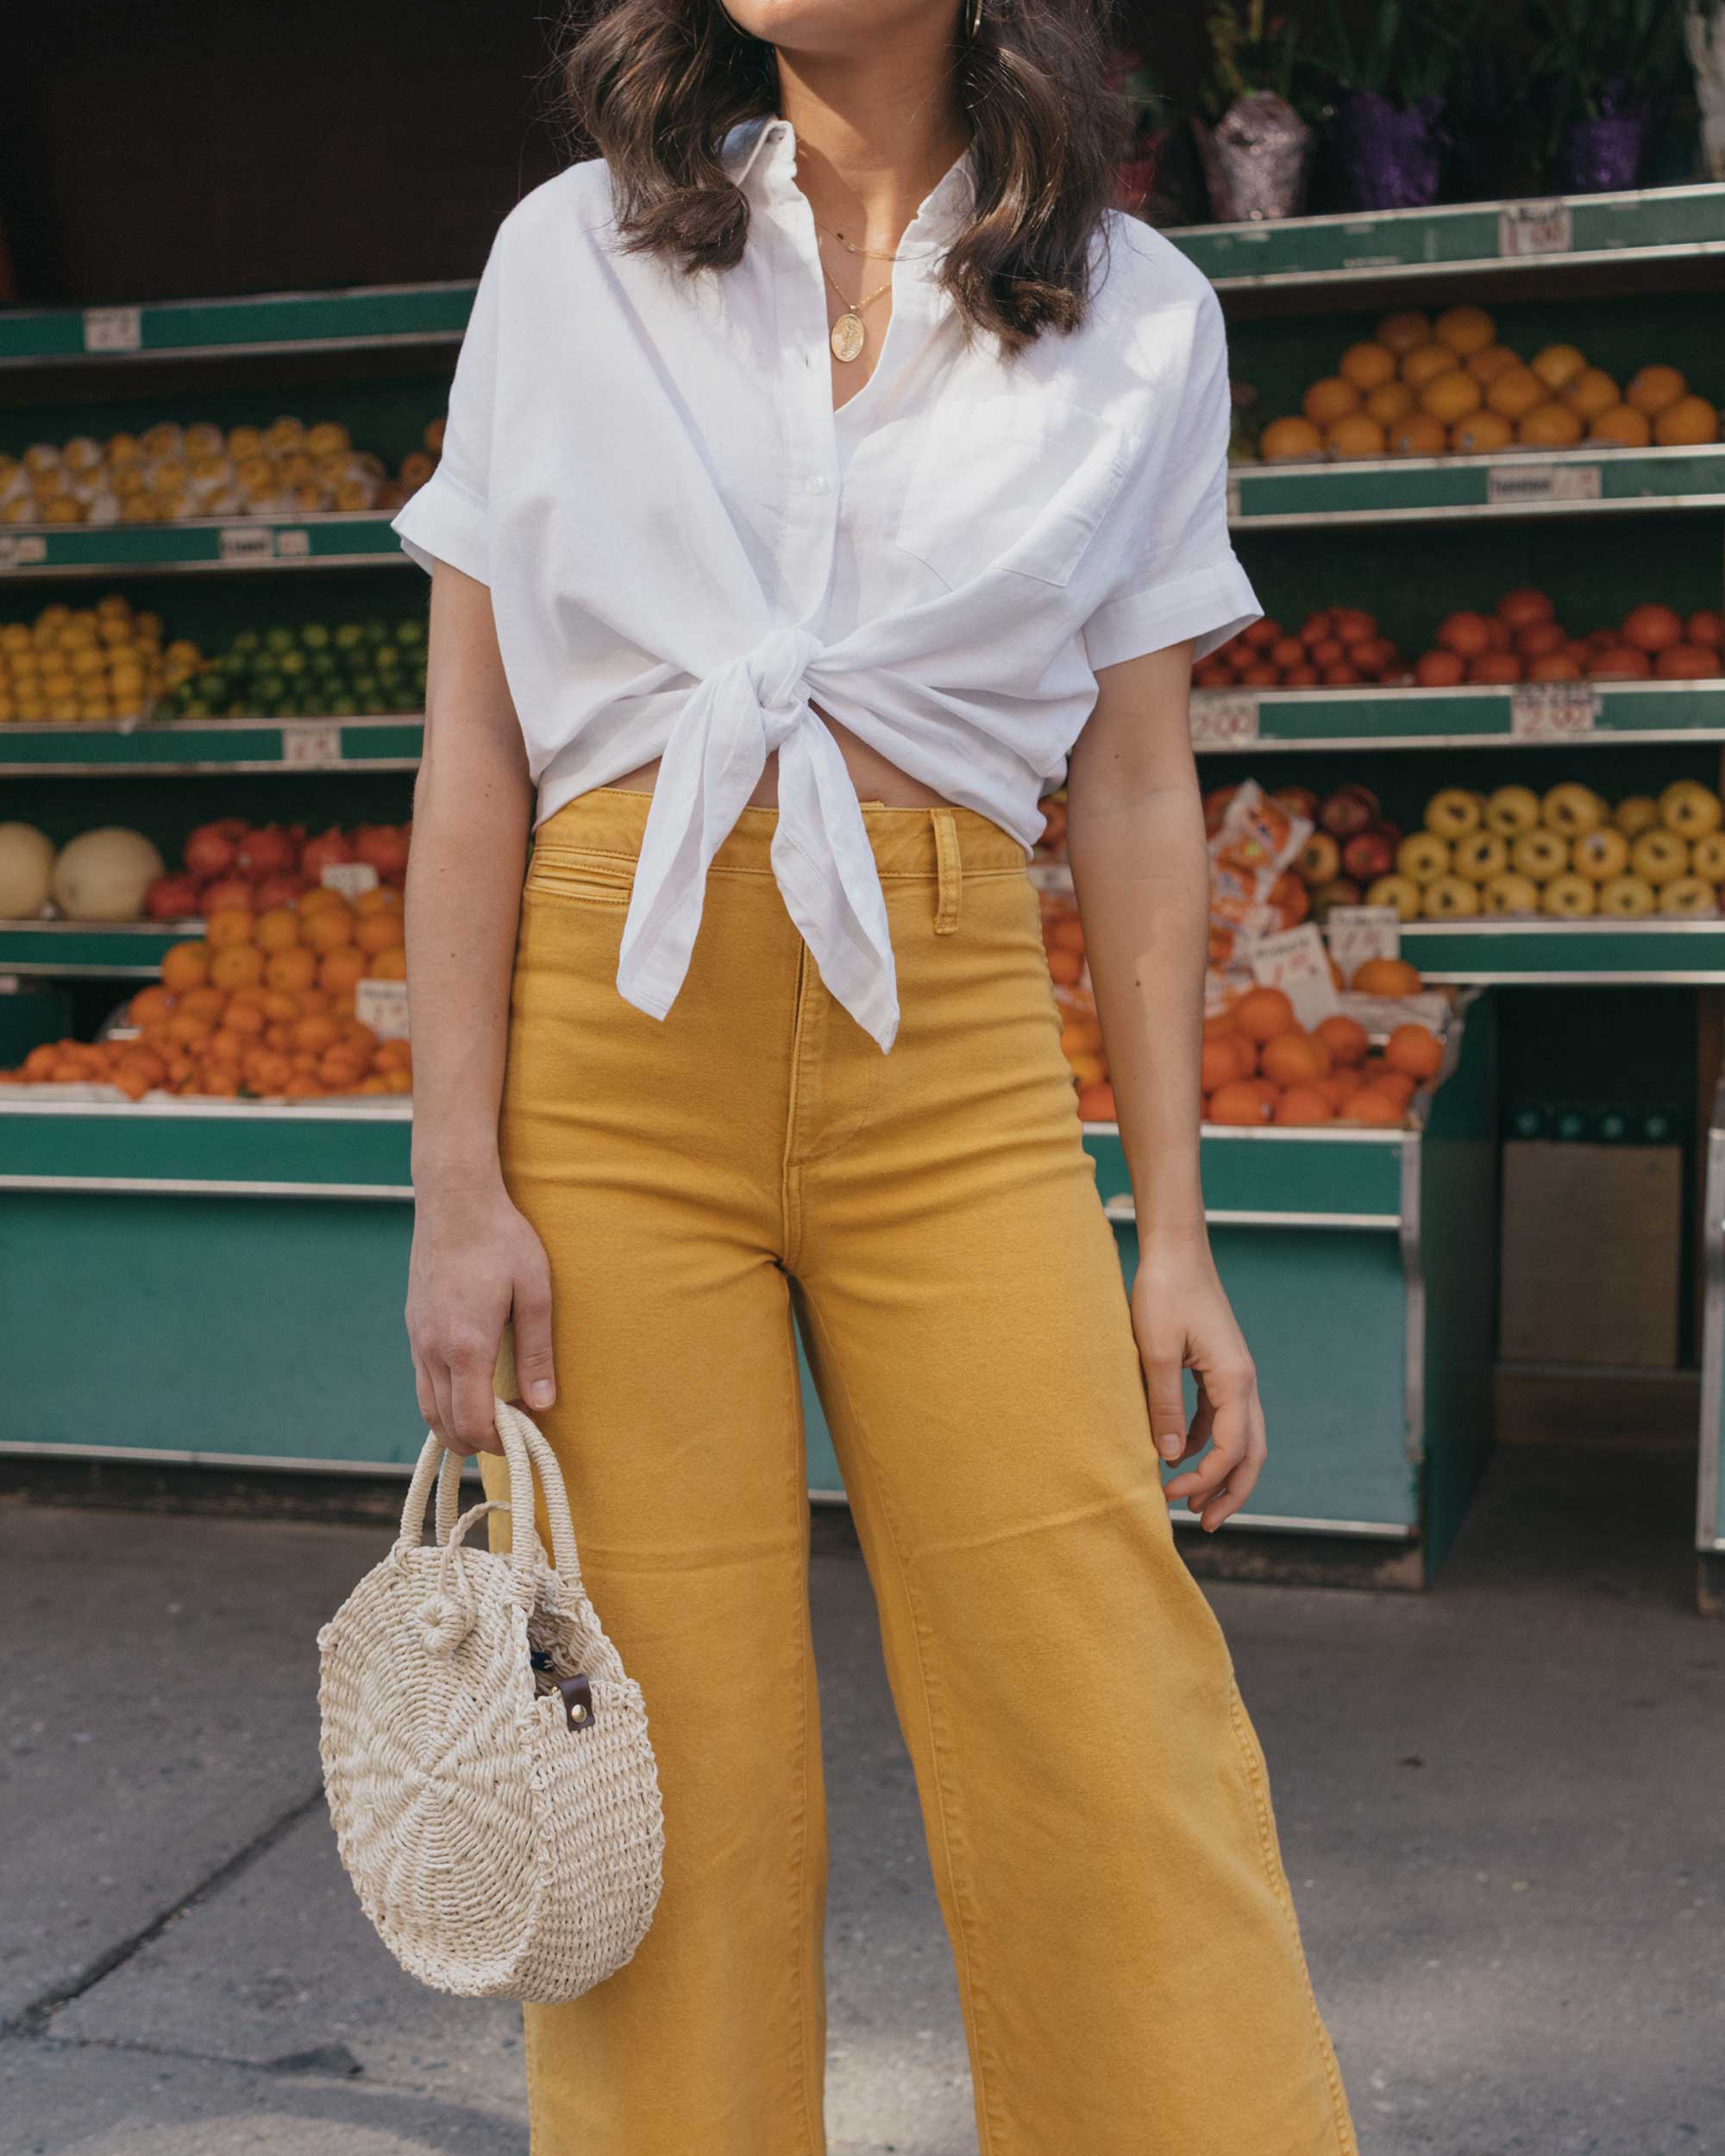 Madewell emmett wide-leg crop pants Round Woven Bag short-sleeve tie-front shirt summer outfit fruit stand new york3.jpg